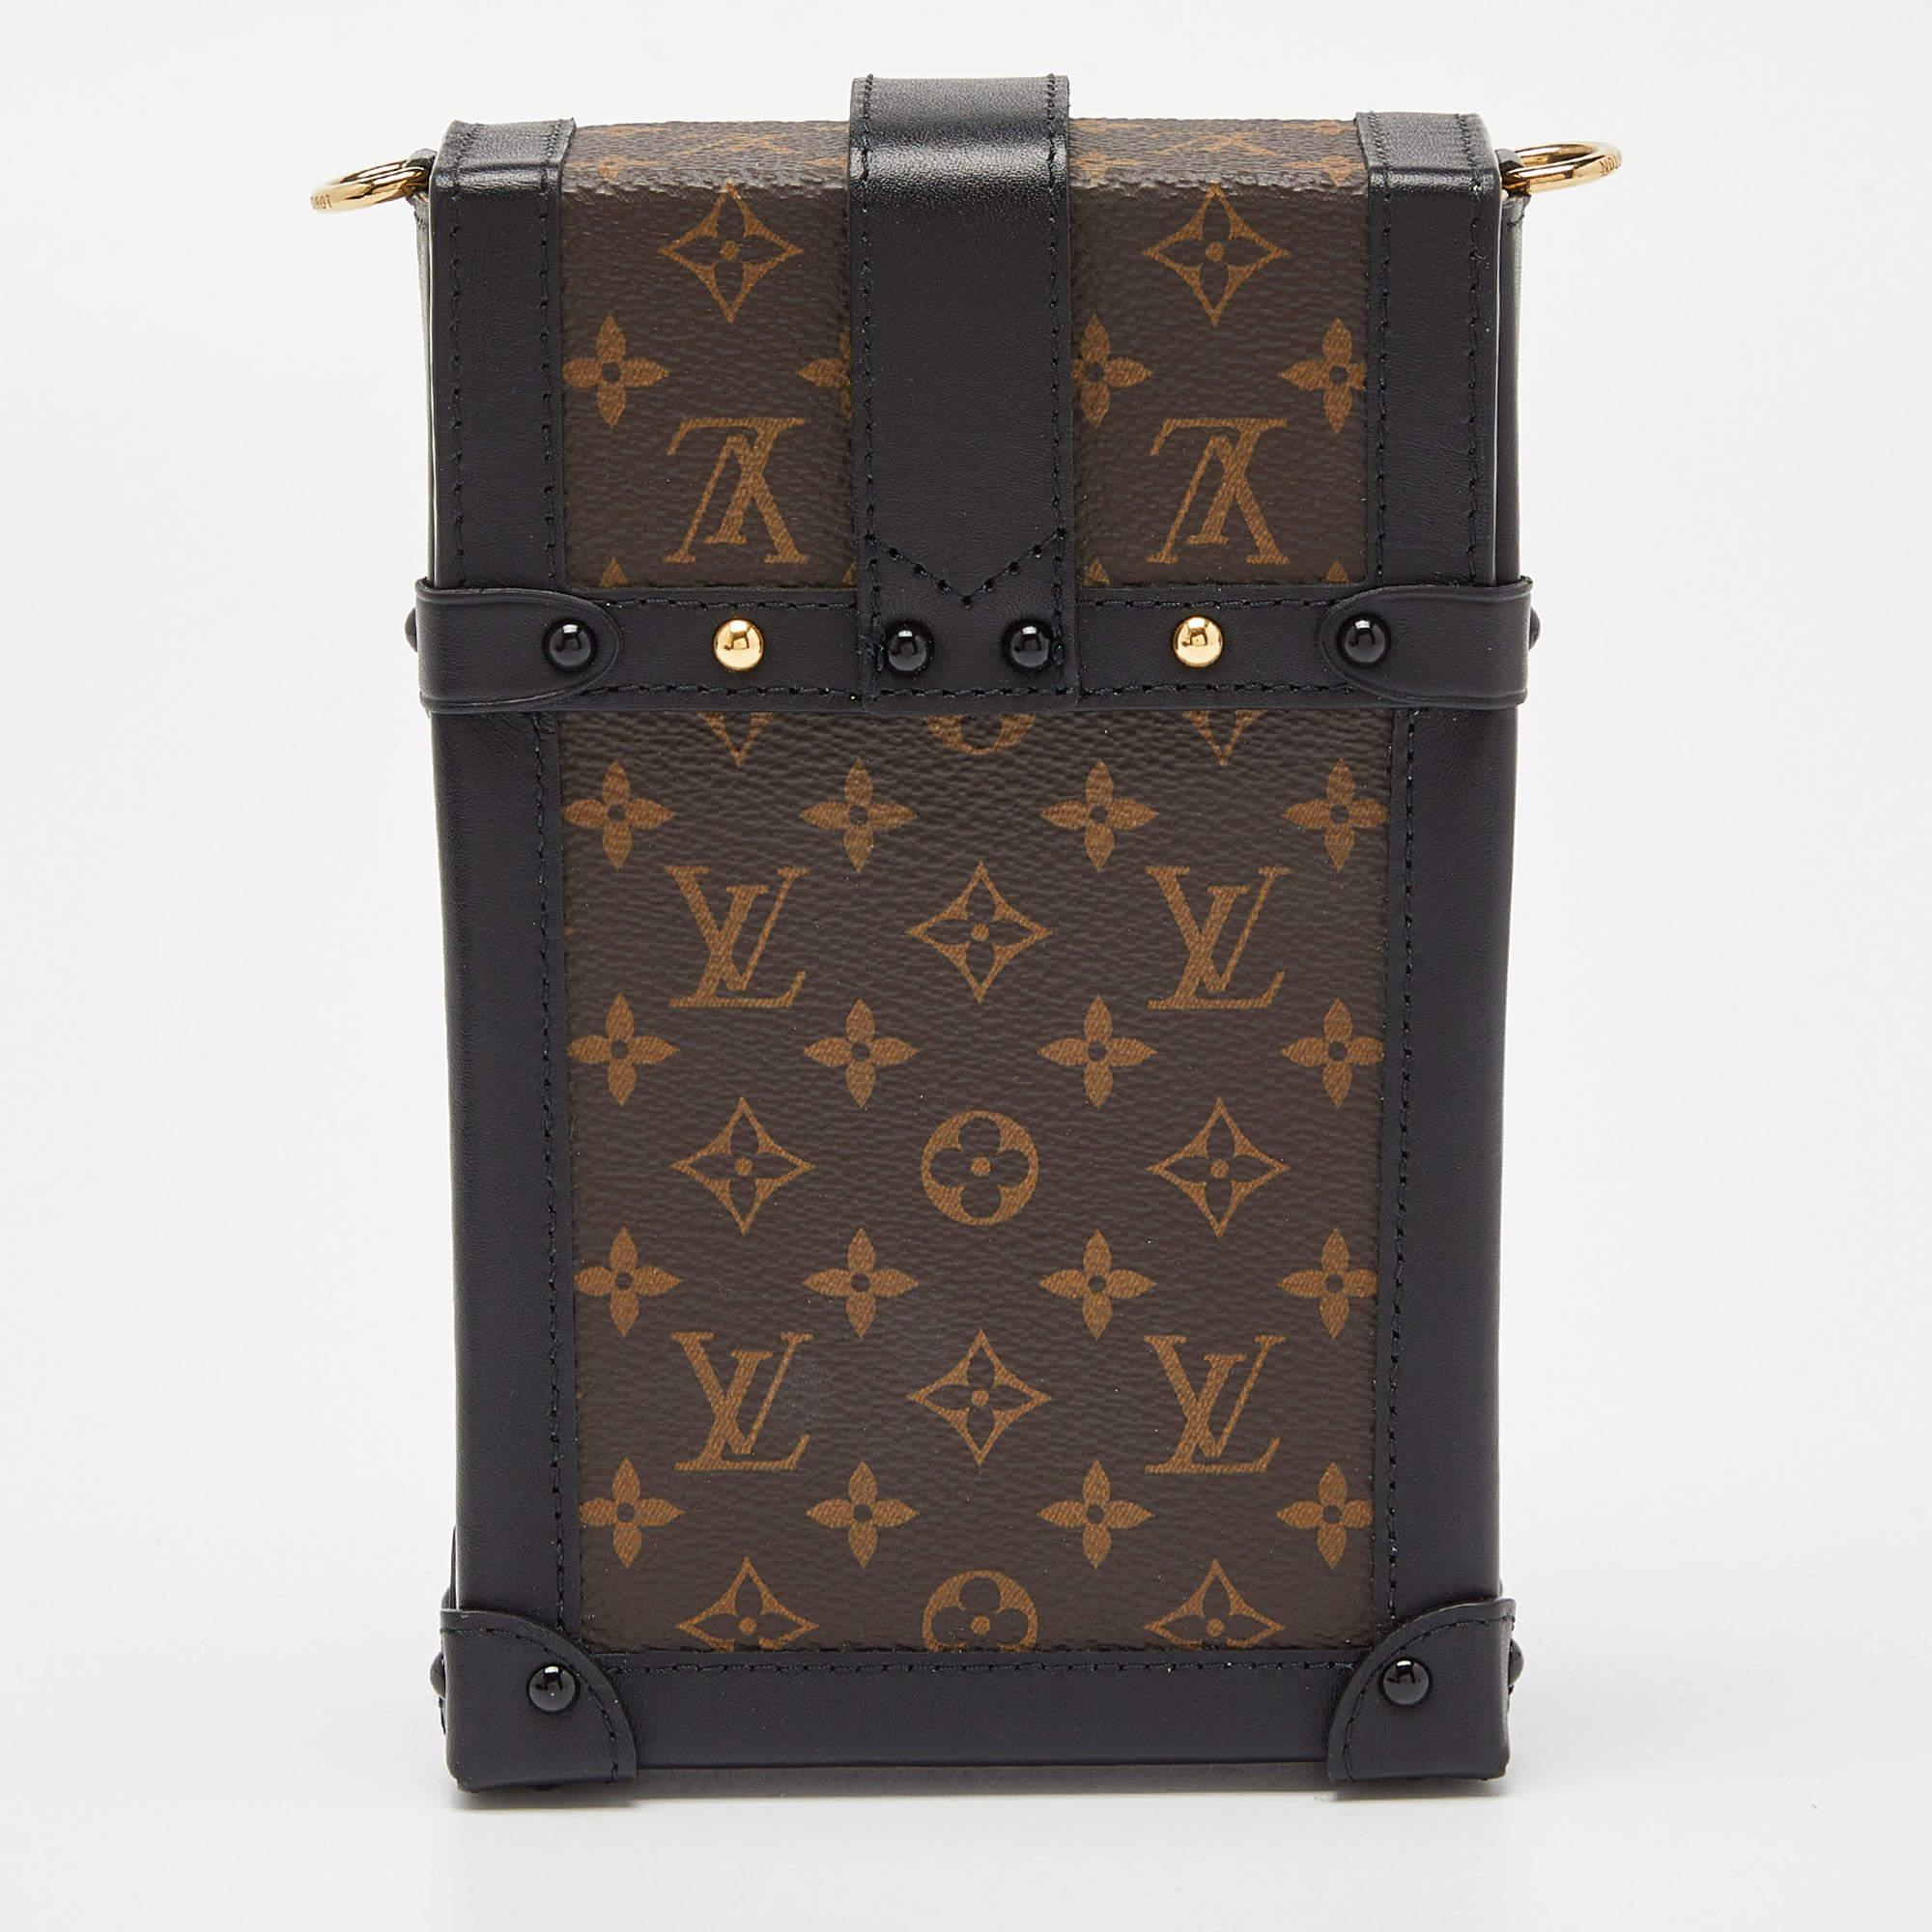 Die vertikale Tasche Pochette Trunk von Louis Vuitton ist aus Monogram Canvas und Leder gefertigt. Sie wird durch goldfarbene Beschläge ergänzt und von einem Schulterriemen gehalten.

